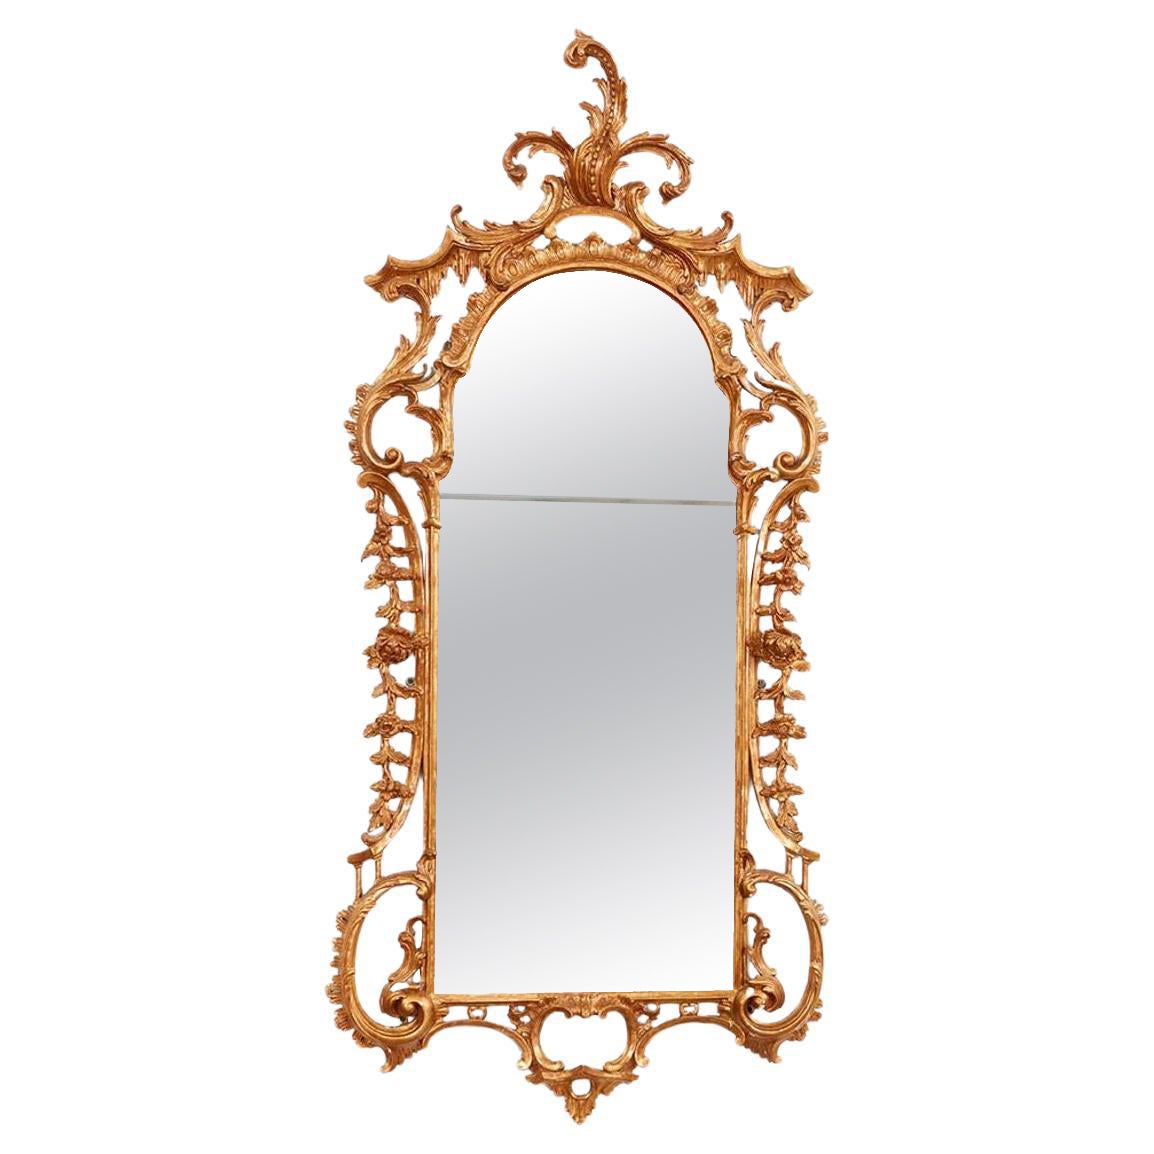 Substantiel miroir géorgien rococo en bois doré